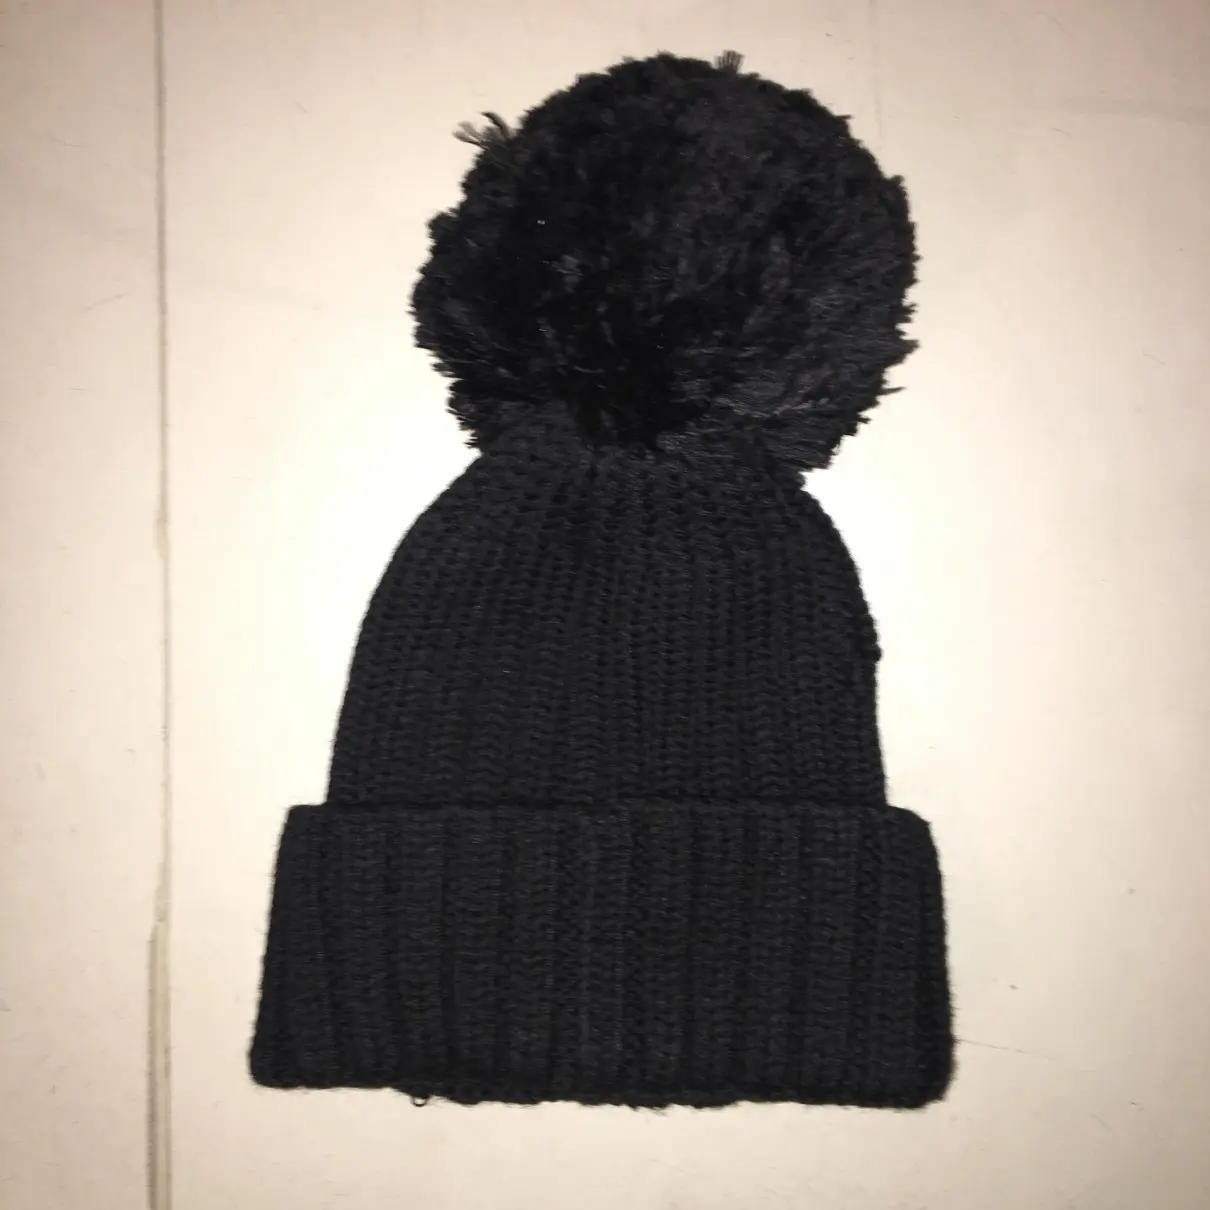 Buy Moose Knuckles Wool hat online